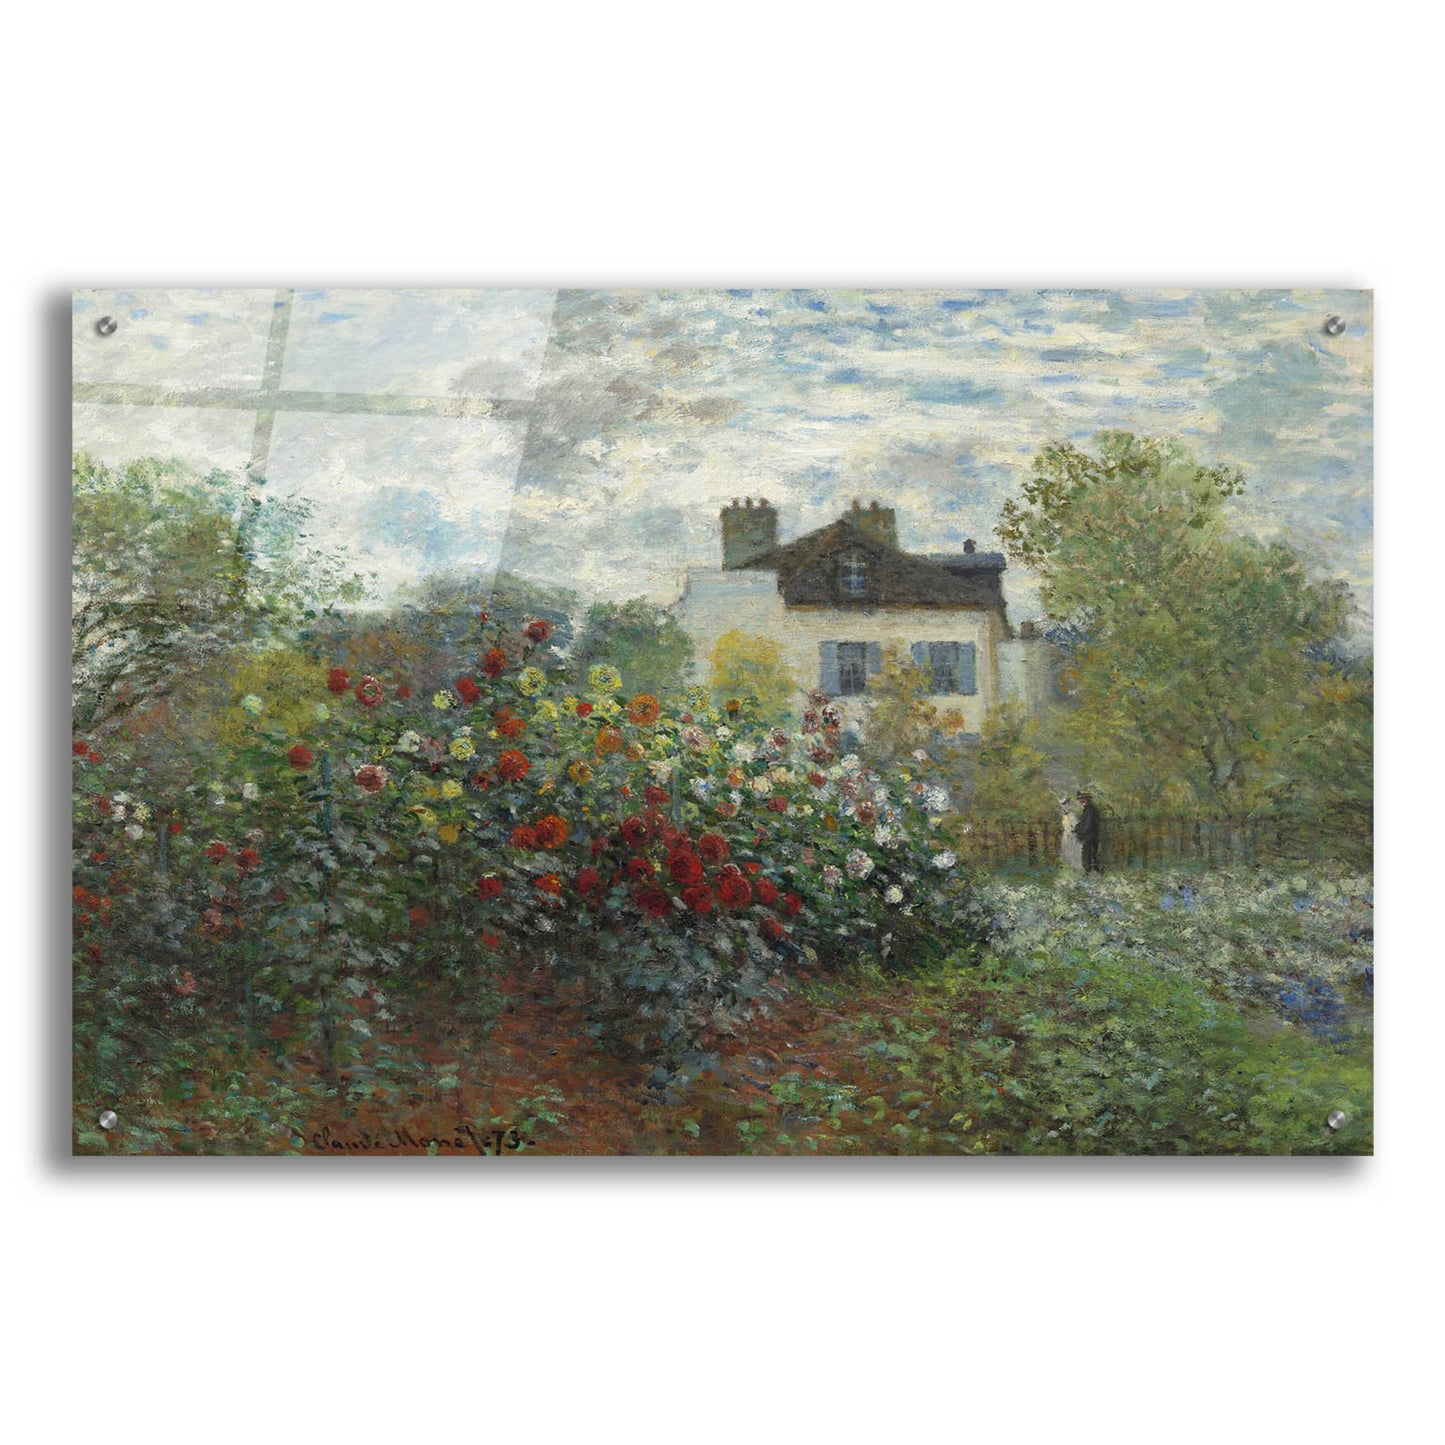 Epic Art 'The Artist’s Garden In Argenteuil' by Claude Monet, Acrylic Glass Wall Art,36x24